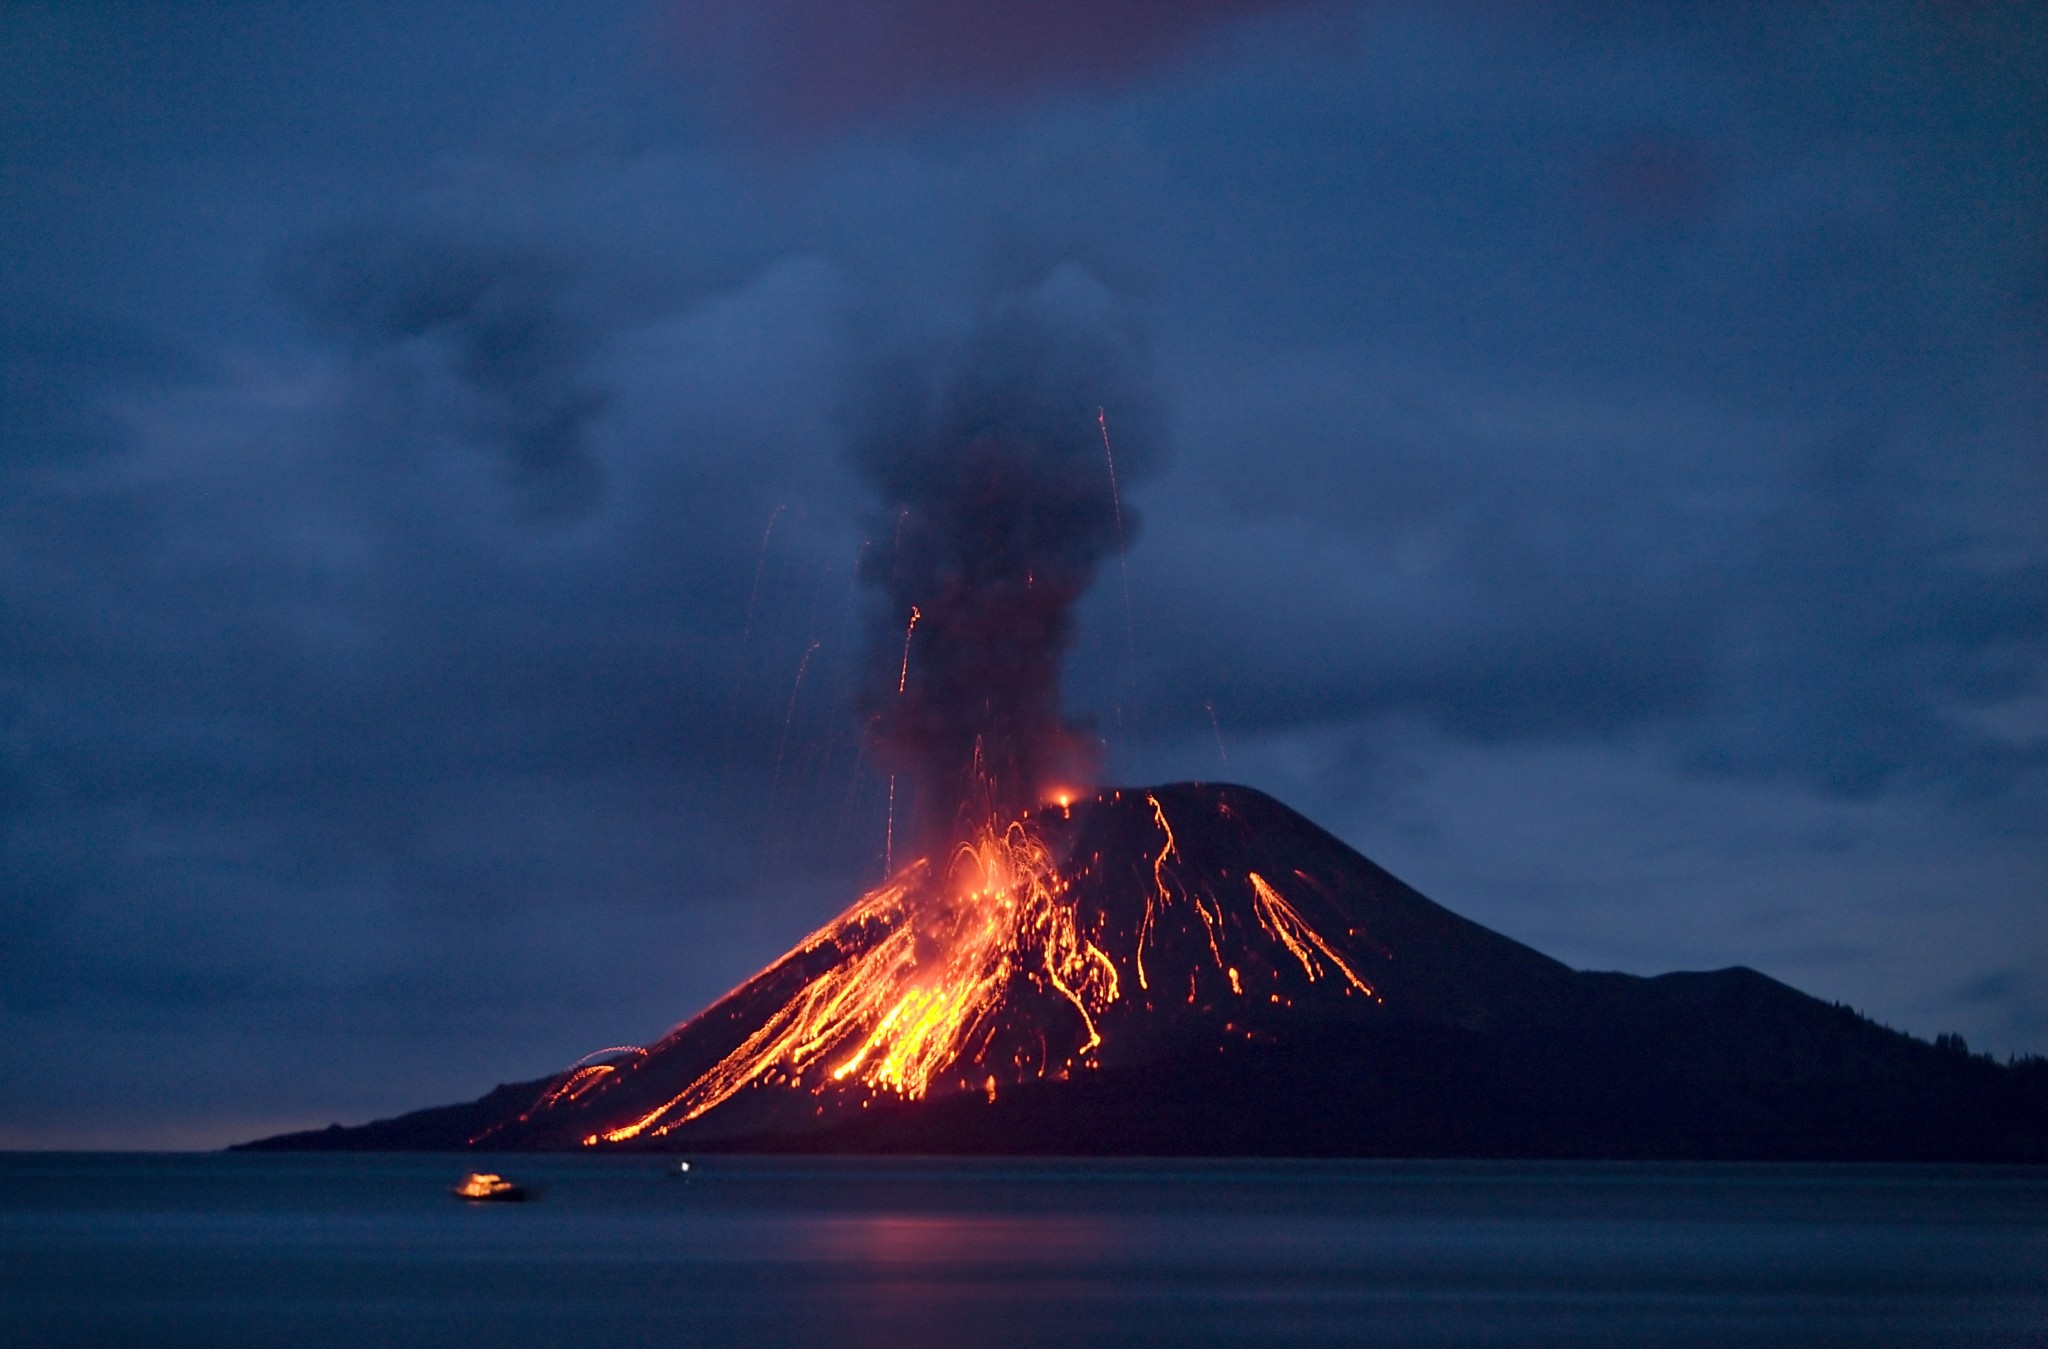 Ο τρομακτικός βρυχηθμός του ηφαιστείου της Σαντορίνης: Η ισχυρότερη έκρηξη που γνώρισε ποτέ η ανθρωπότητα